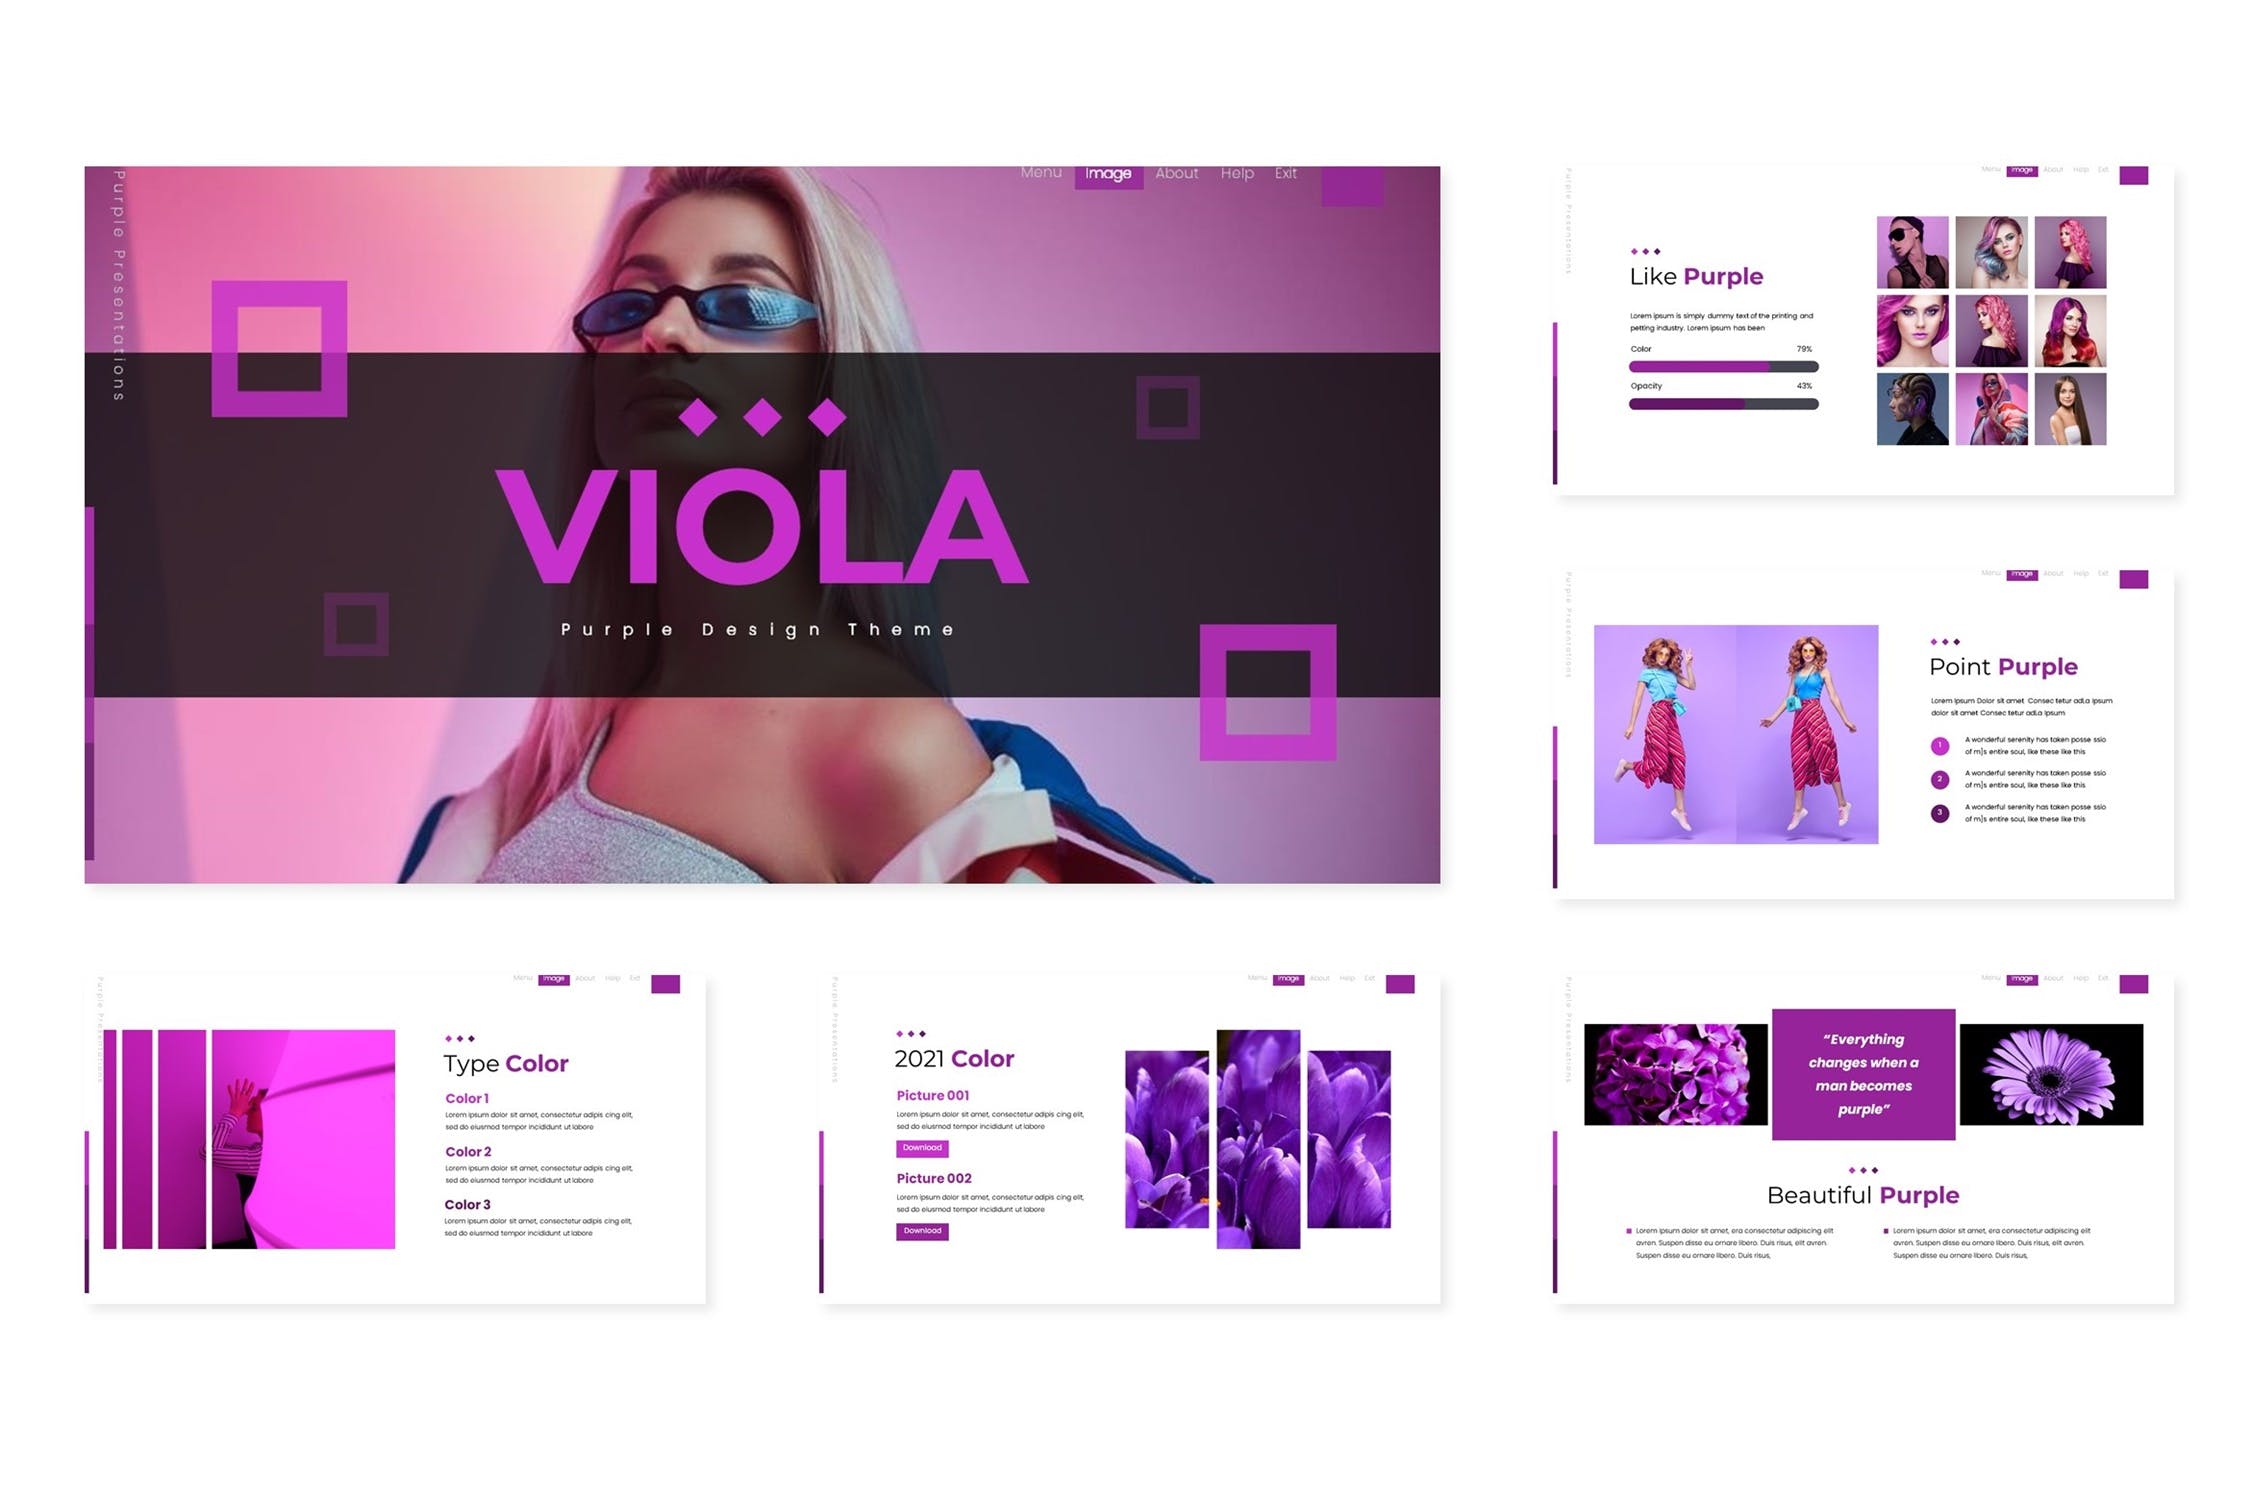 紫色系女装发型设计主题PPT幻灯片模板 viola-powerpoint-template-酷社 (KUSHEW)